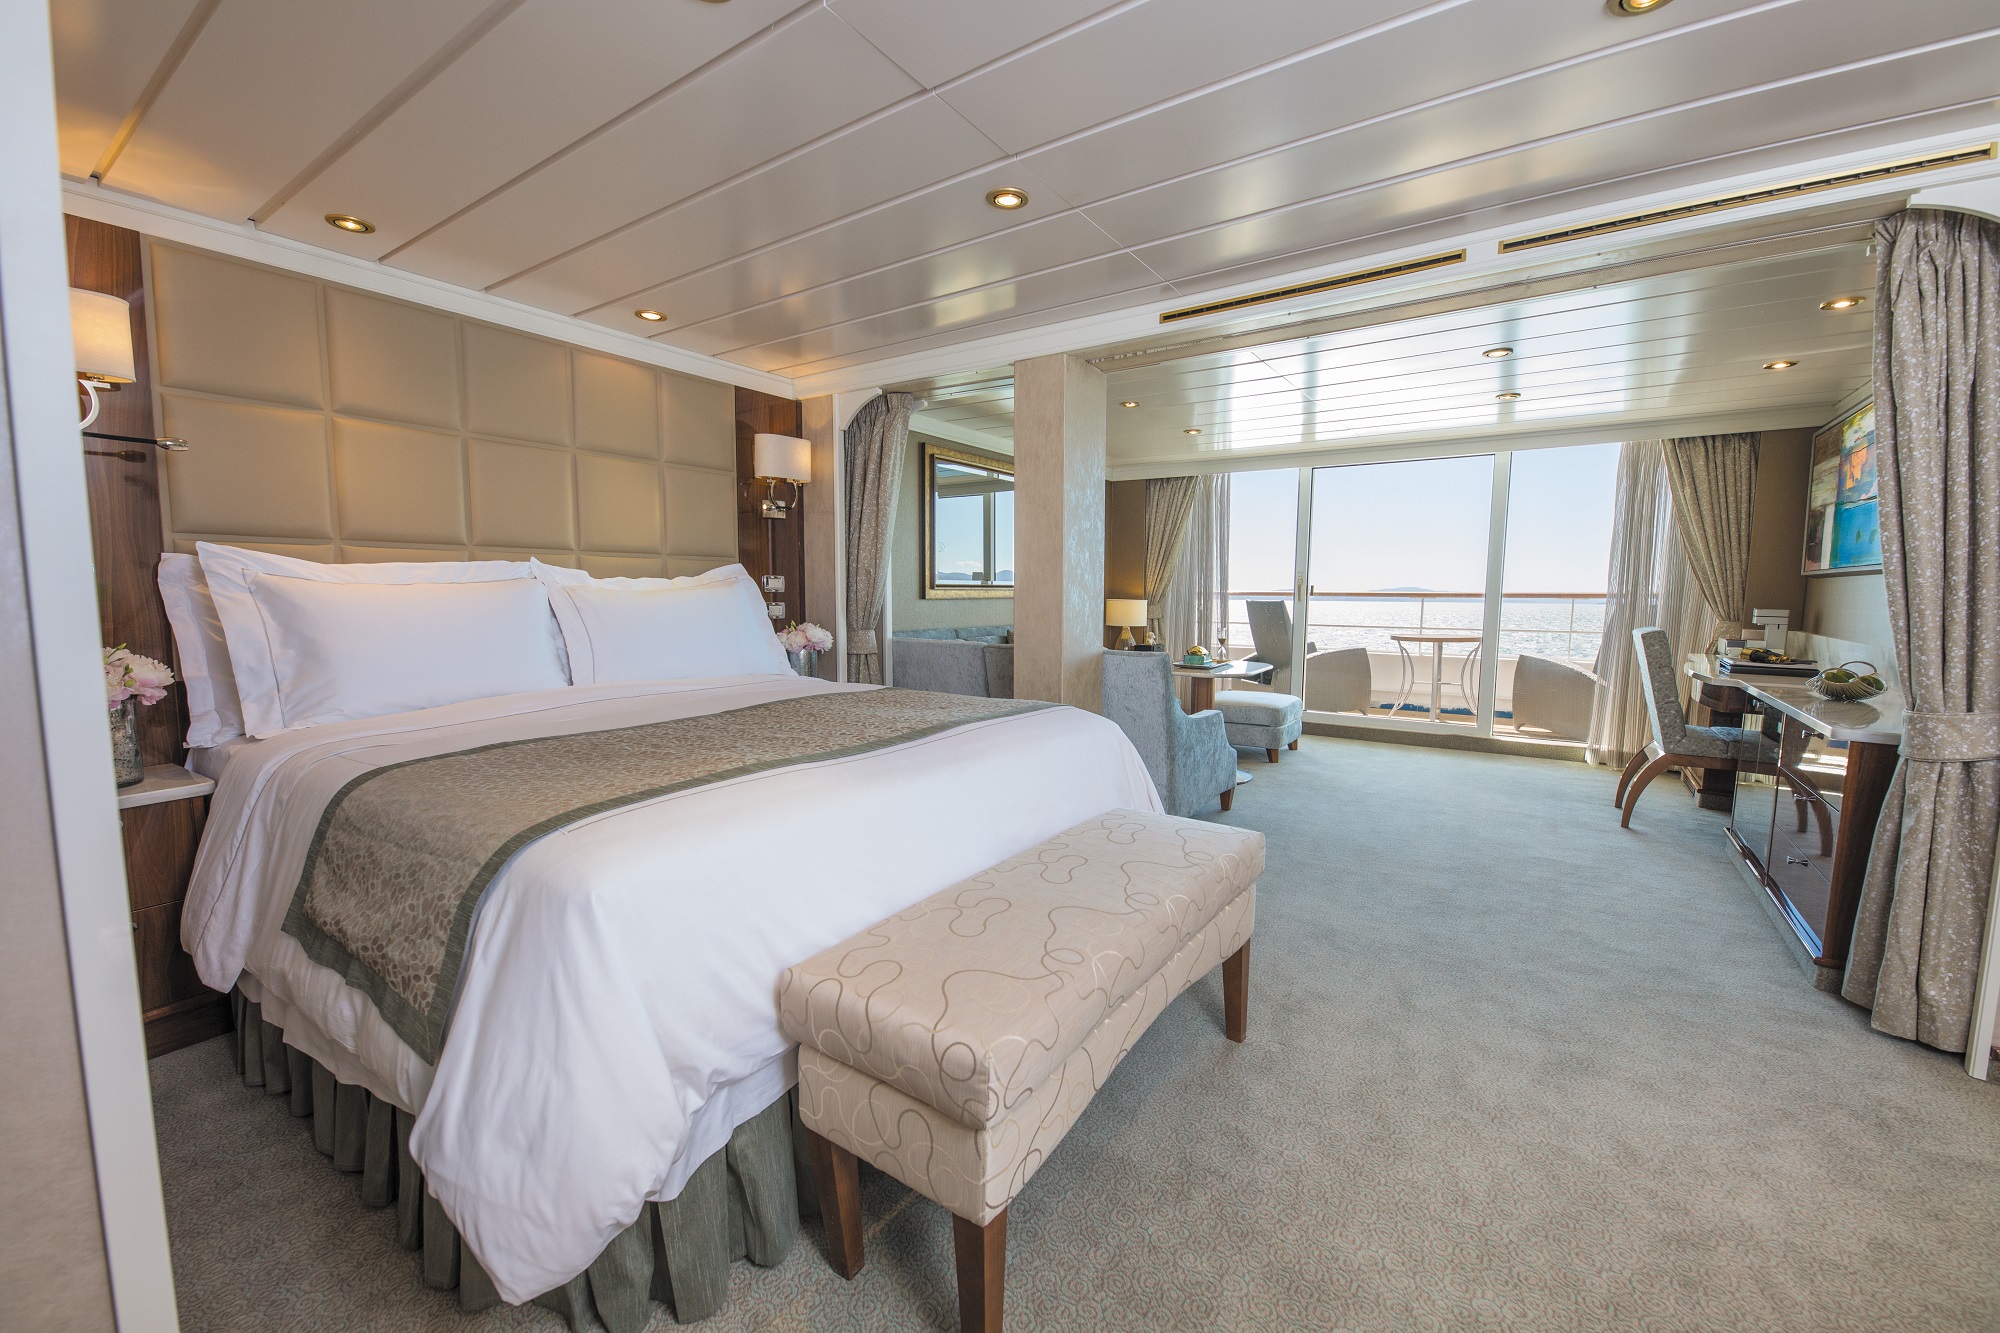 Die Luxusreederei Regent Seven Seas Cruises® hat ihre Elevate Your Experience-Aktion bis zum 13. November 2020 verlängert und ermöglicht somit Gästen aus Deutschland, Österreich und der Schweiz ein kostenfreies Zwei-Kategorien-Suiten-Upgrade